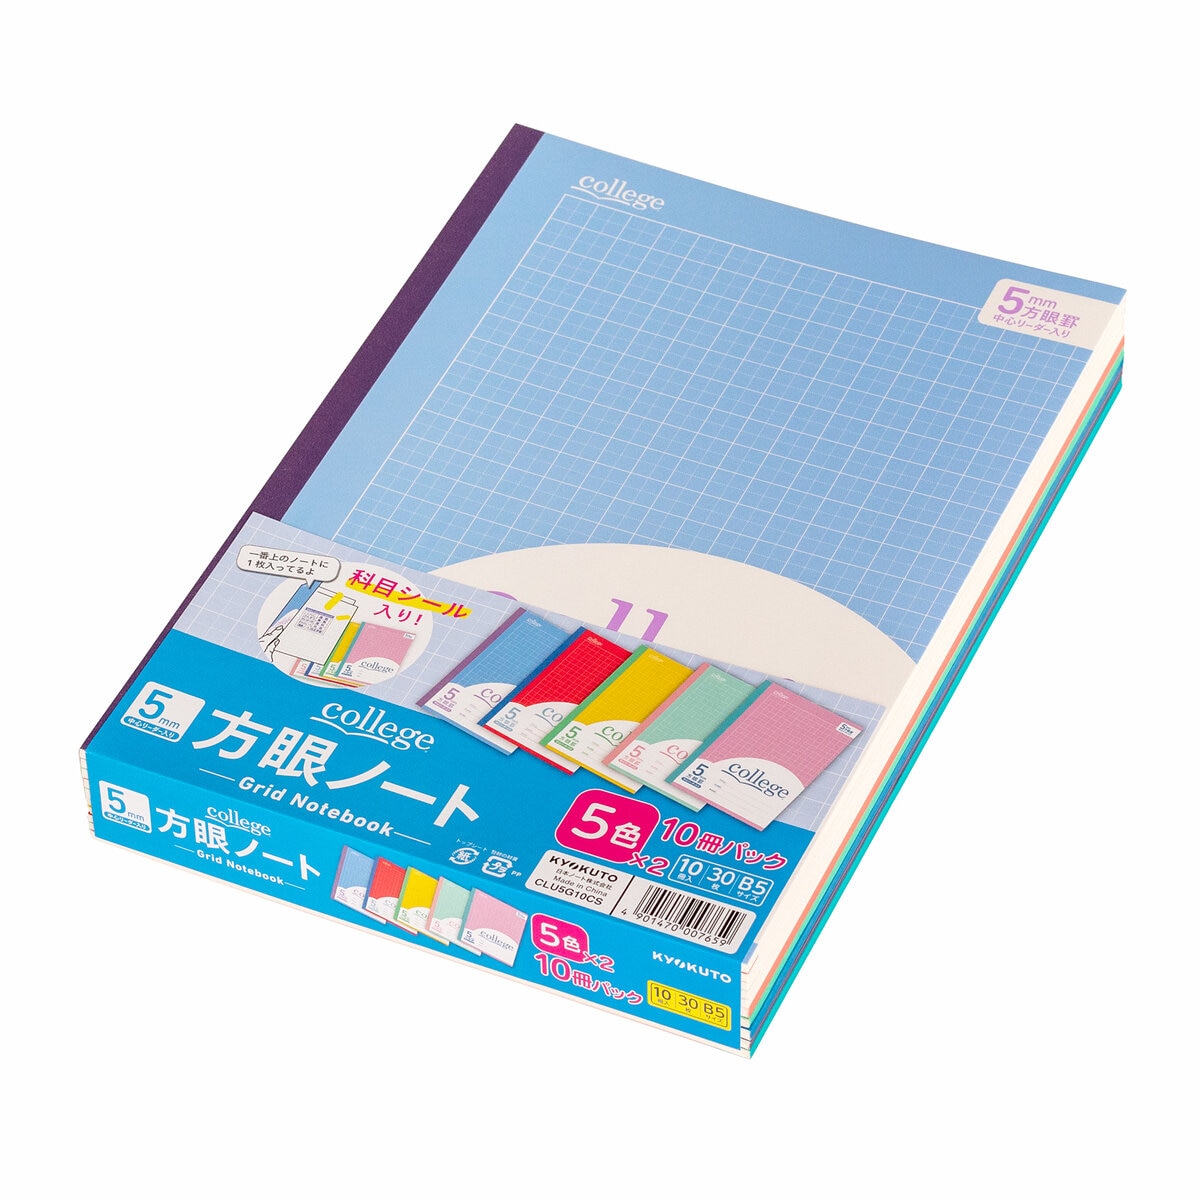 日本ノート College 方眼ノート 10冊パック B5 5㎜方眼 | Costco Japan